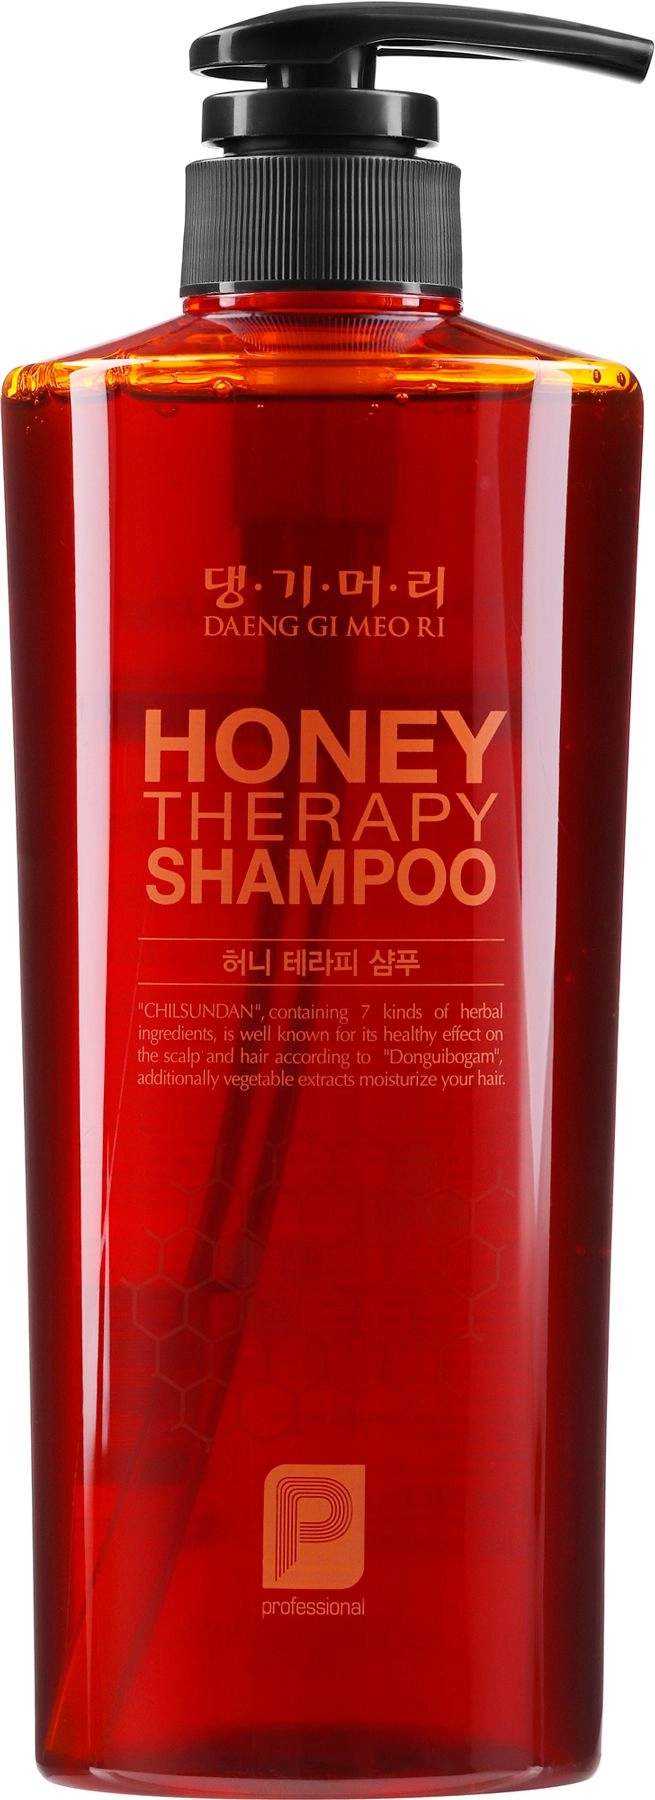 Шампунь "Медовая терапия" - Daeng Gi Meo Ri Honey Intensive Therapy Shampoo, 500 мл - фото N1